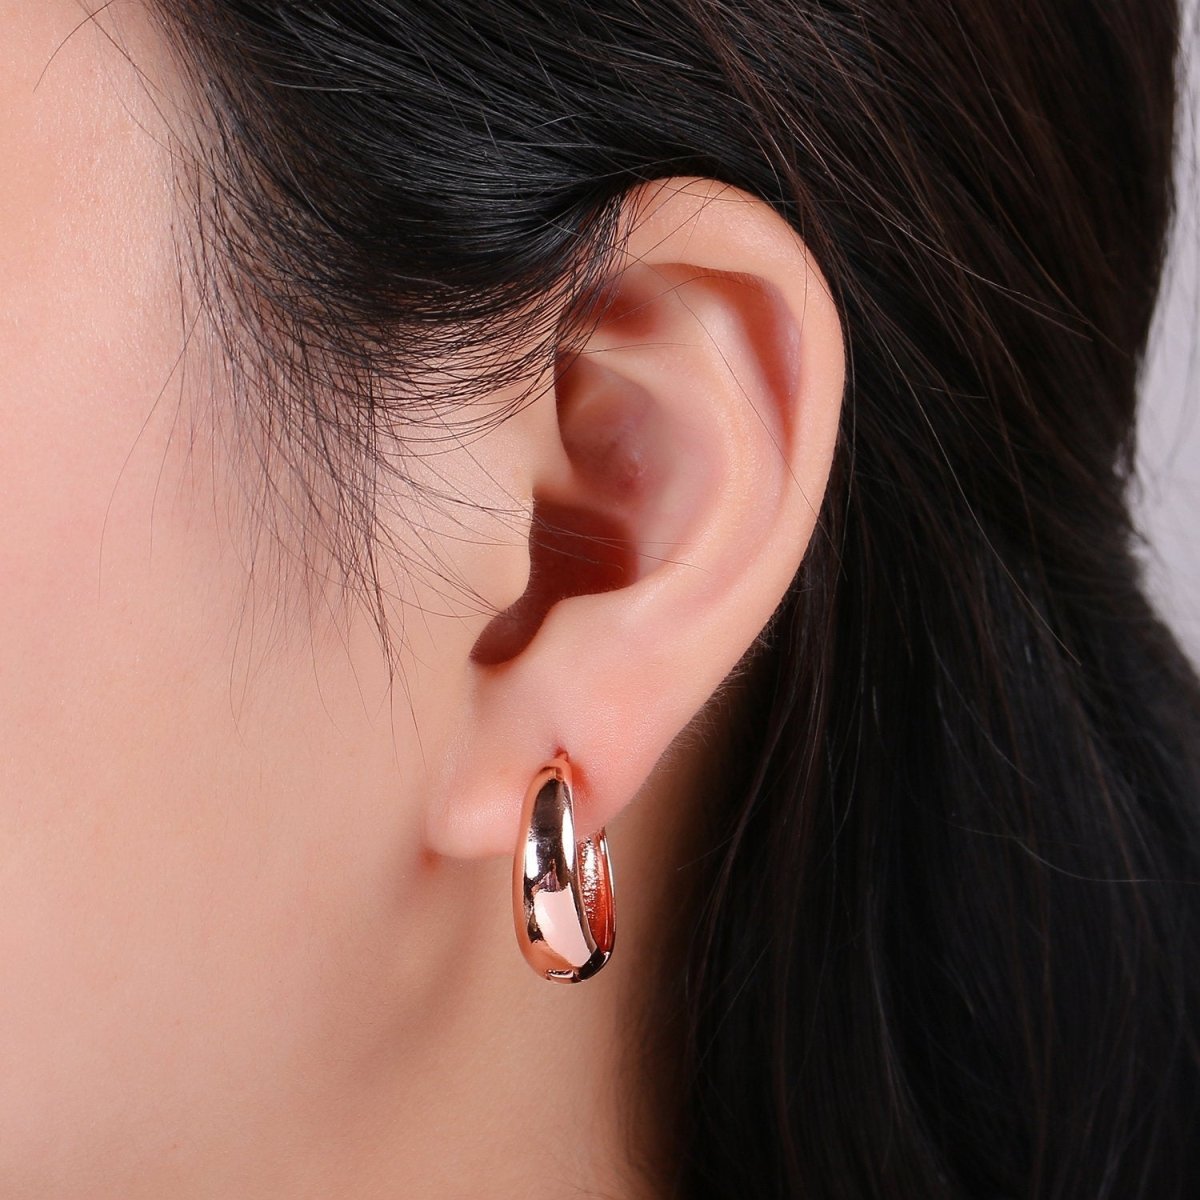 24k Vermeil Gold Earrings, Huggie Earring, Tiny Earrings, Smooth Plated Earrings, Handmade Earring, Everyday Wear Earrings, 20mm Earring K-702 K-704 - DLUXCA